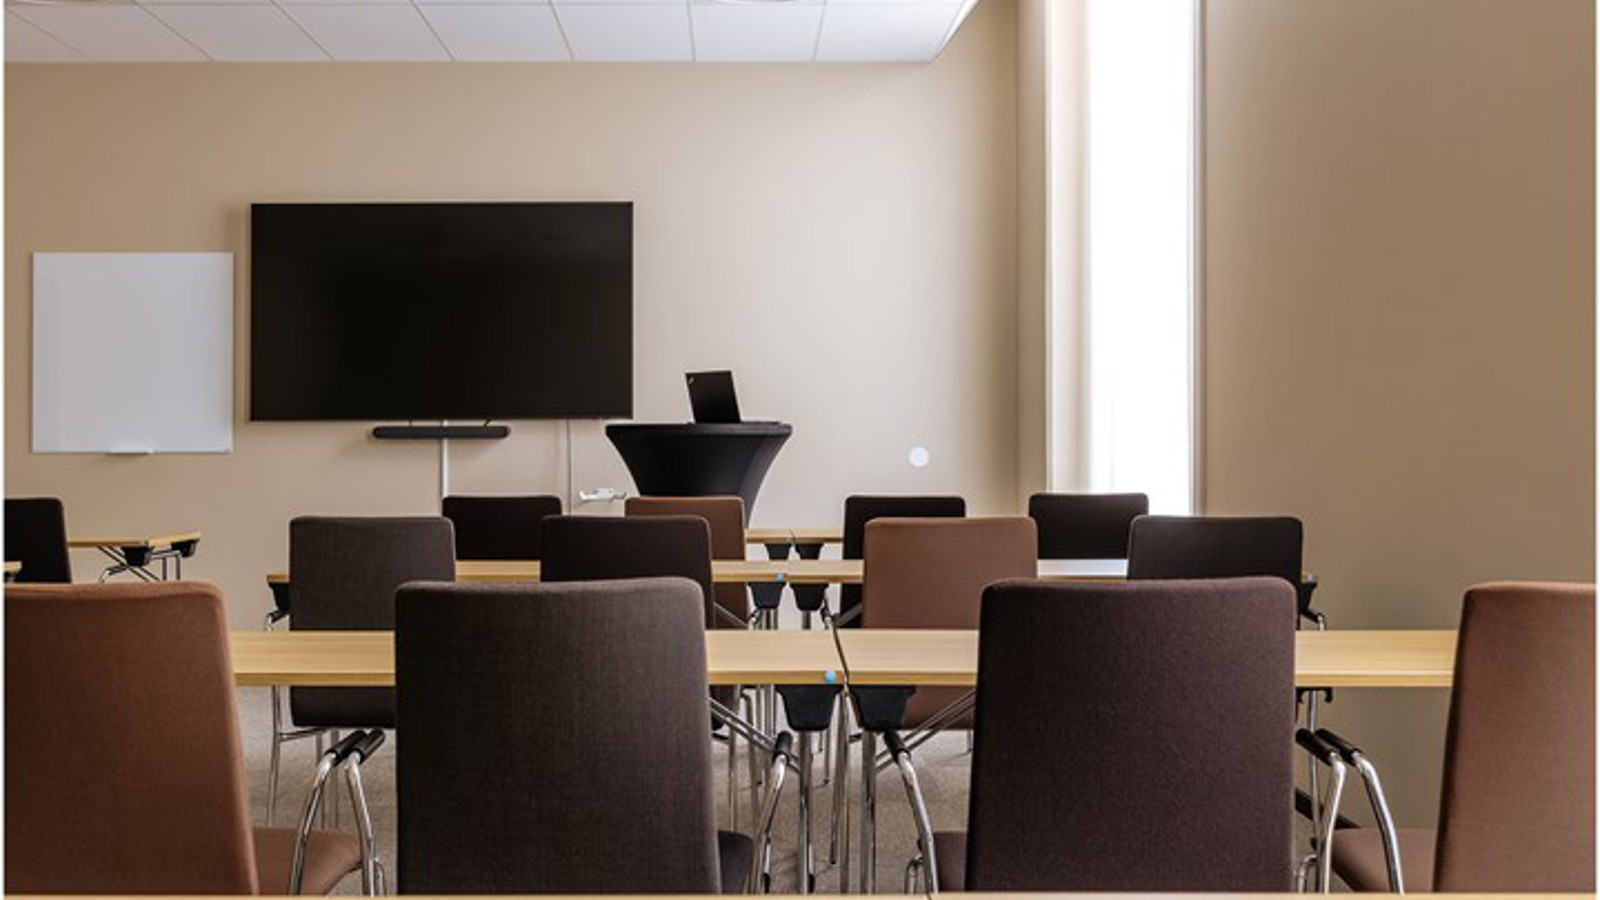 Konferensrum med skolsittning i ljus- och mörkbruna färger med tv-skärm och fönster